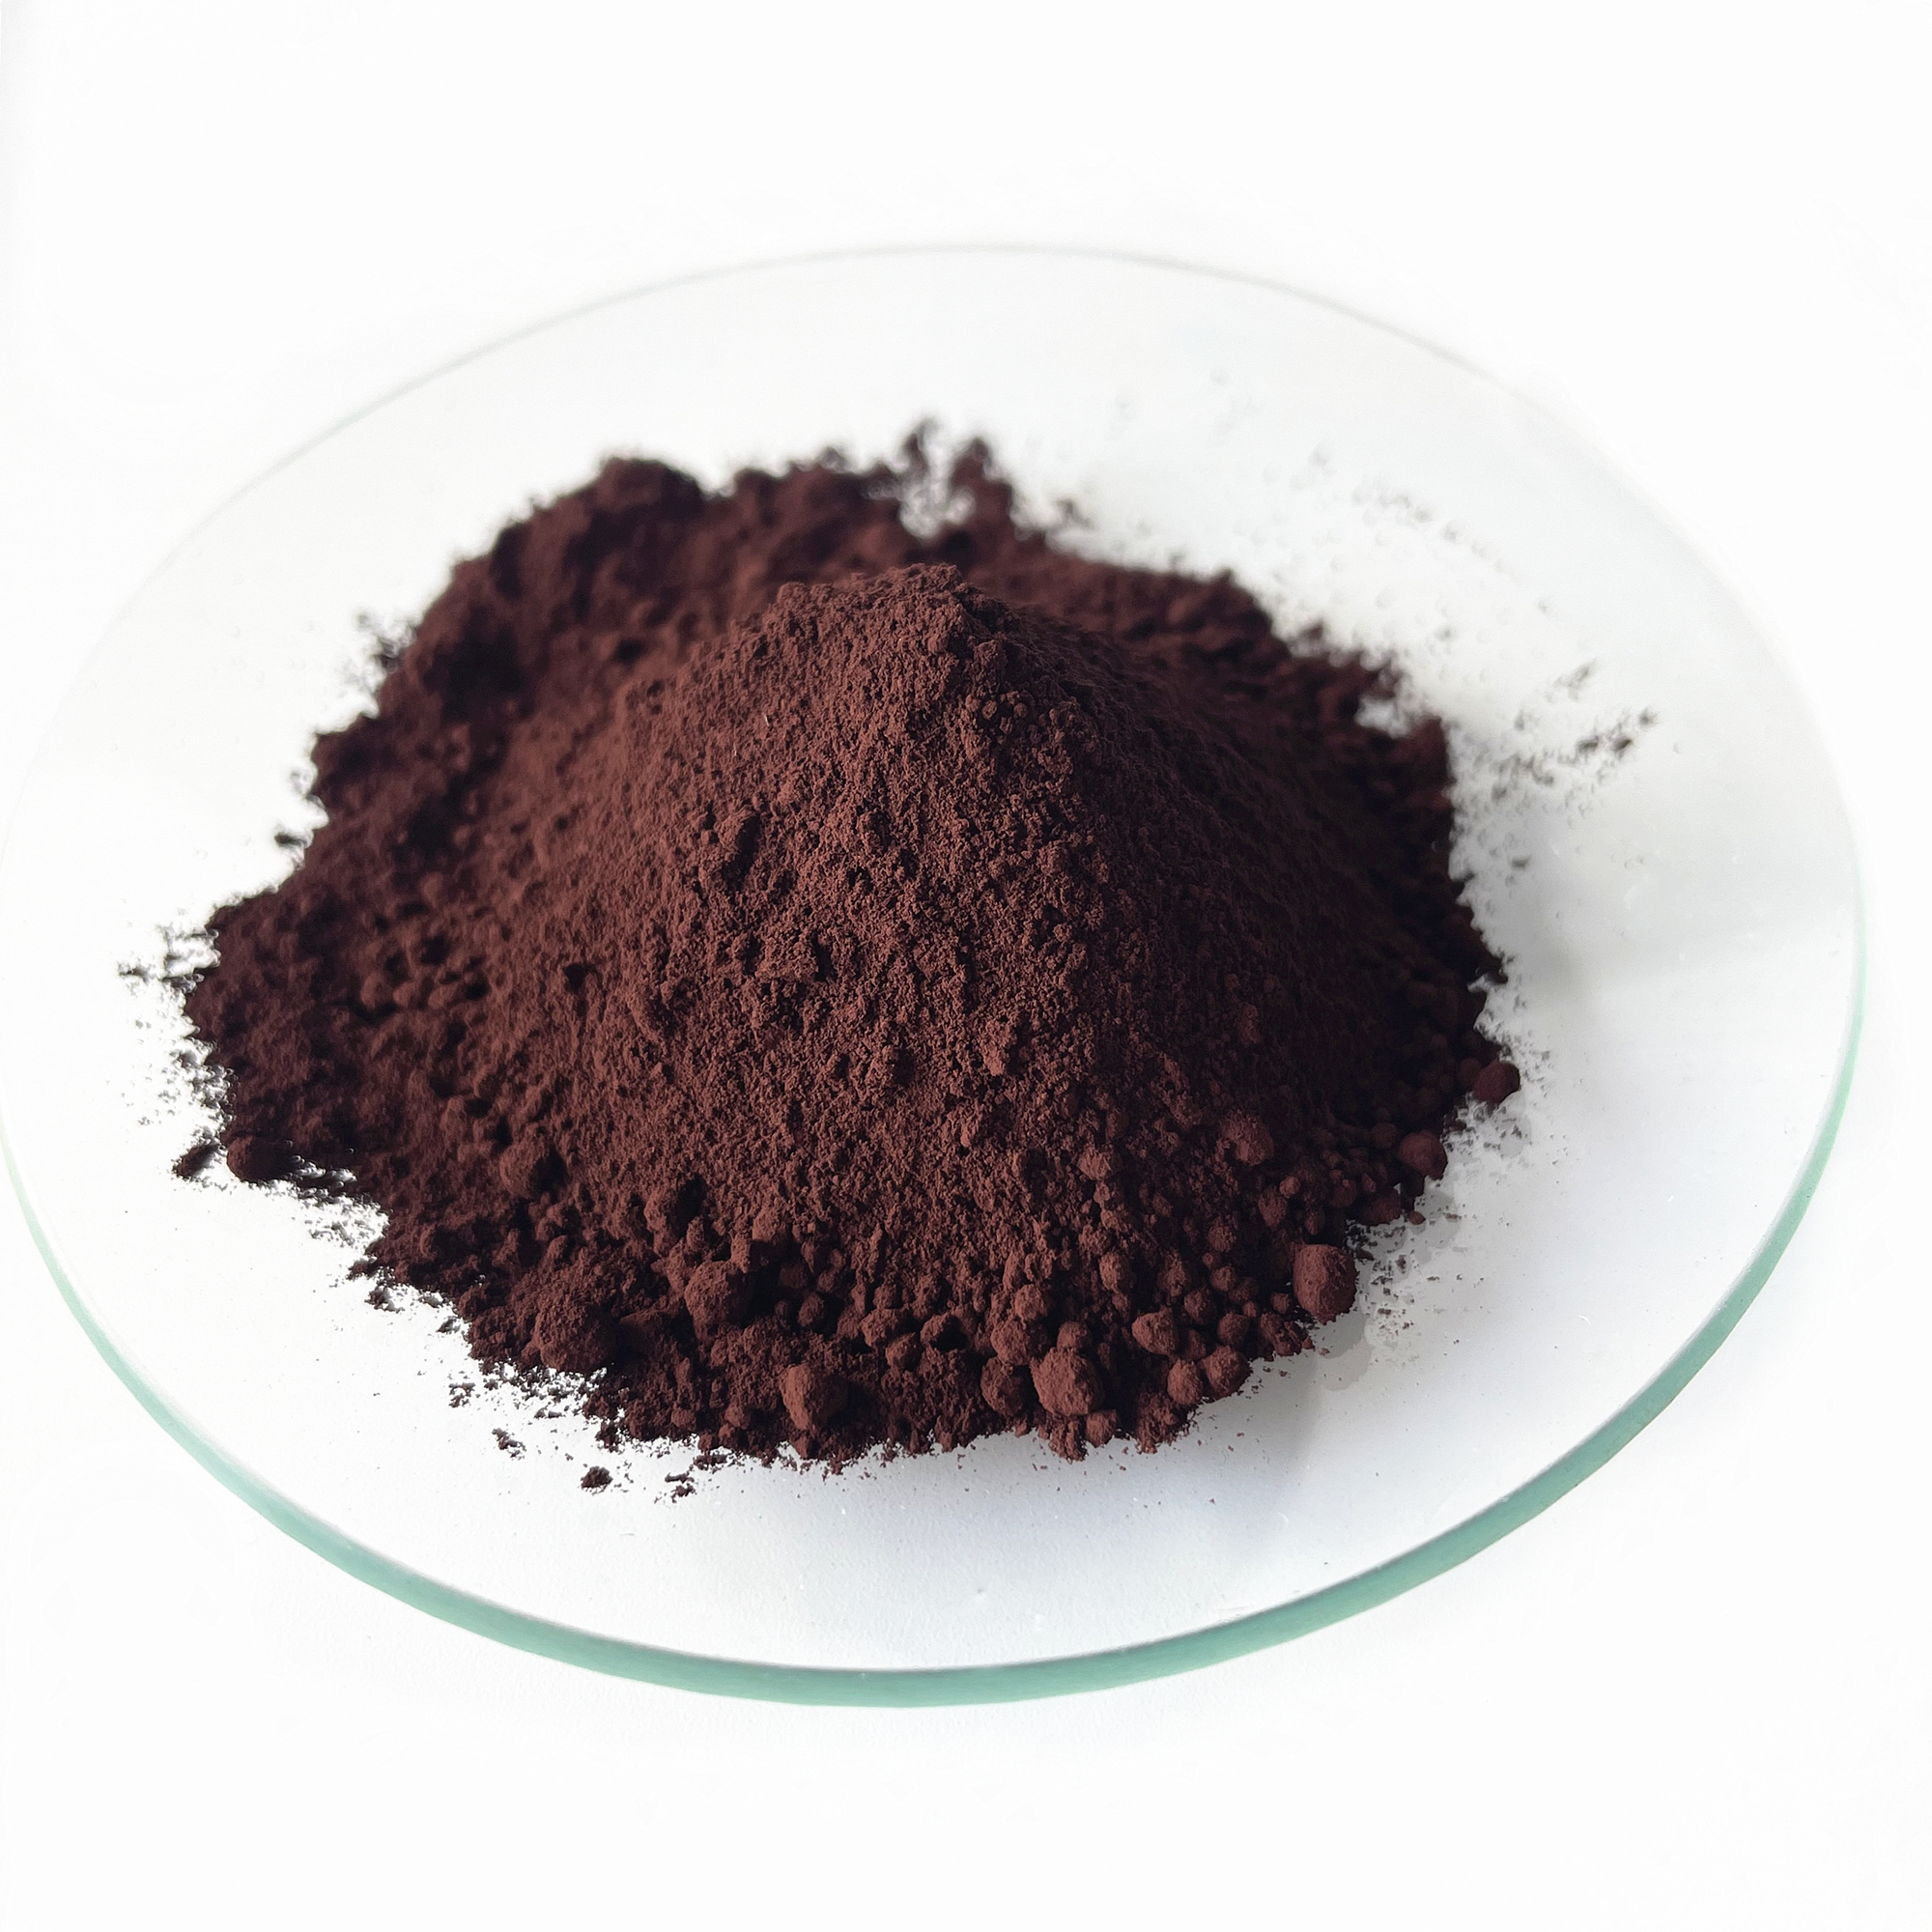 Synthetic Iron oxide brown 686 pigment powder mtengo wa Kupanga Konkire